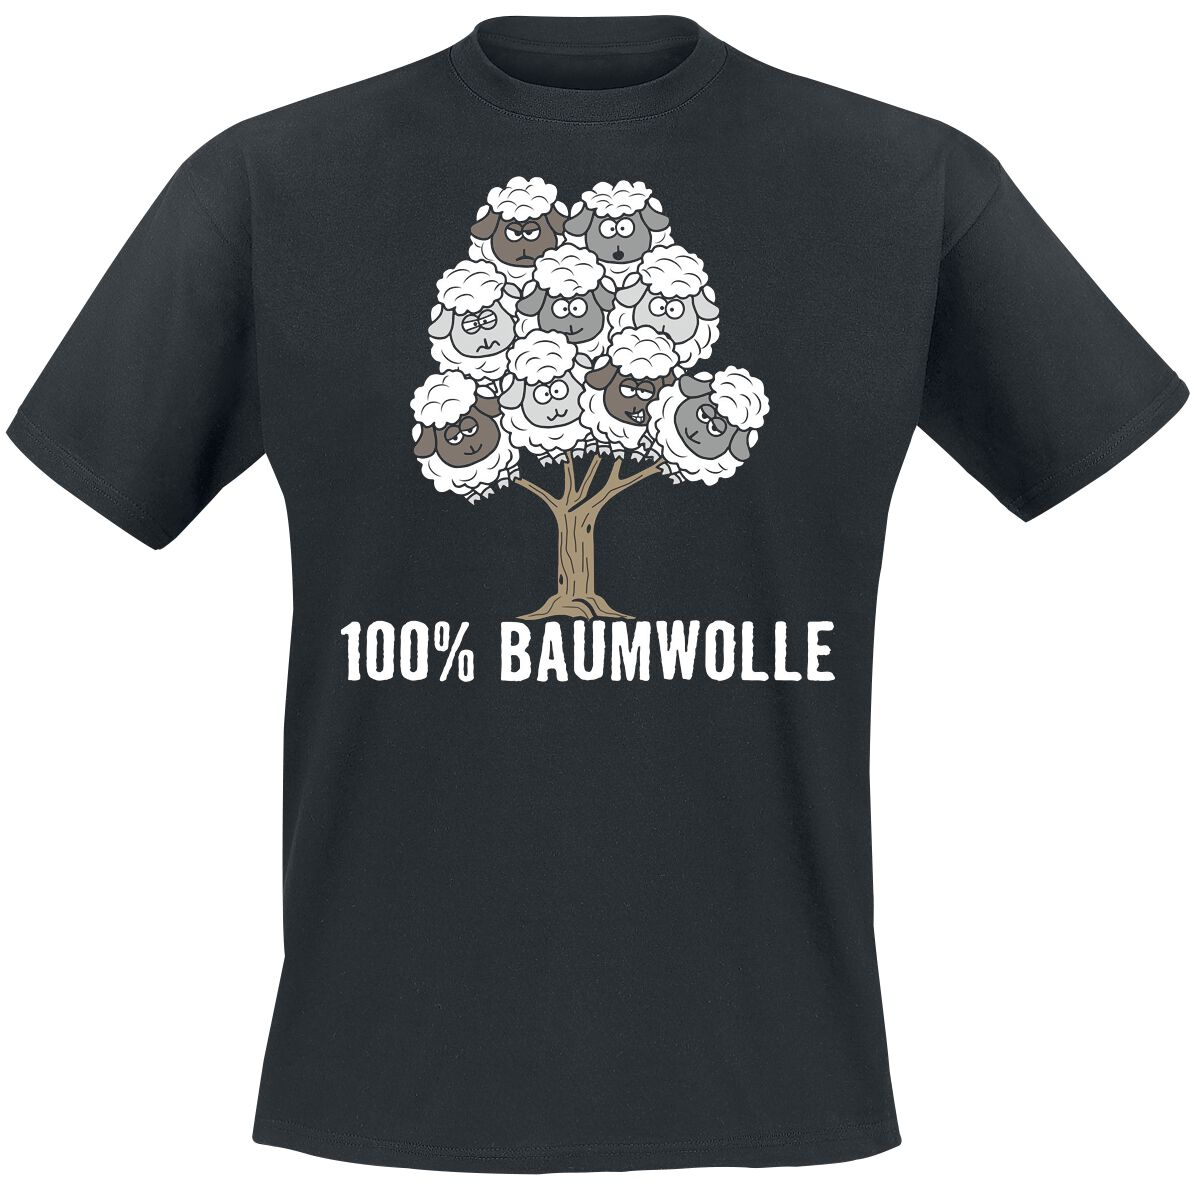 Tierisch T-Shirt - 100% Baumwolle - L bis 4XL - für Männer - Größe L - schwarz